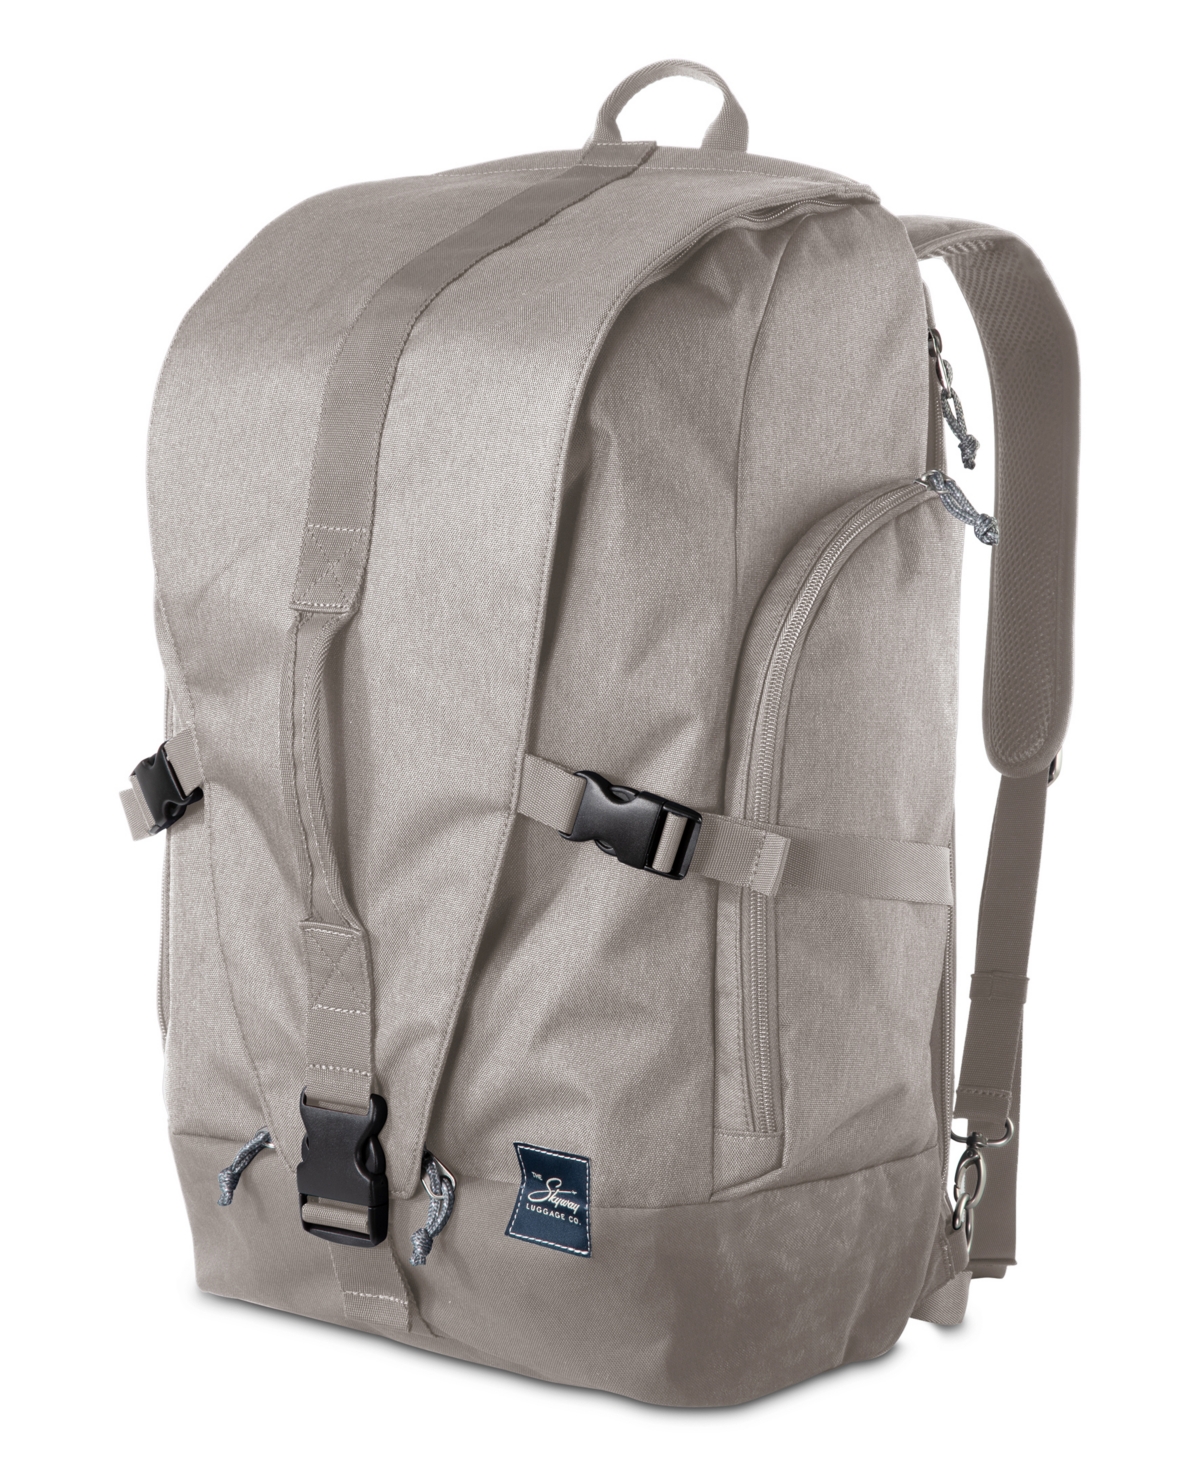 Skyway Rainier Weekender Backpack, 43" In Zion Gray